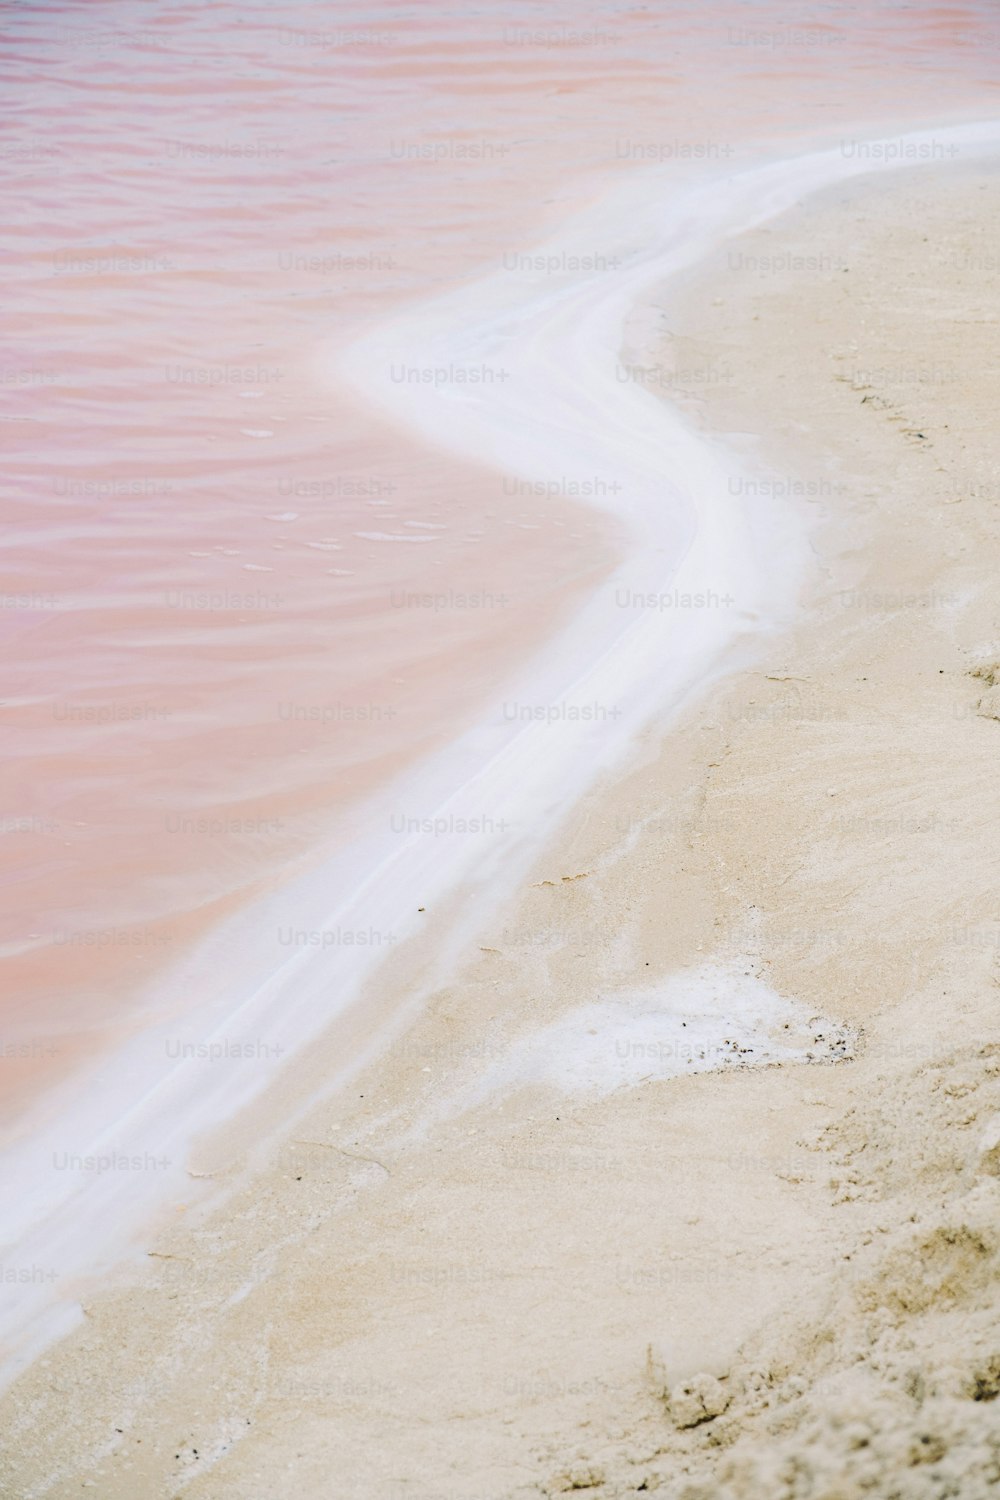 Un pájaro parado en una playa junto a un cuerpo de agua